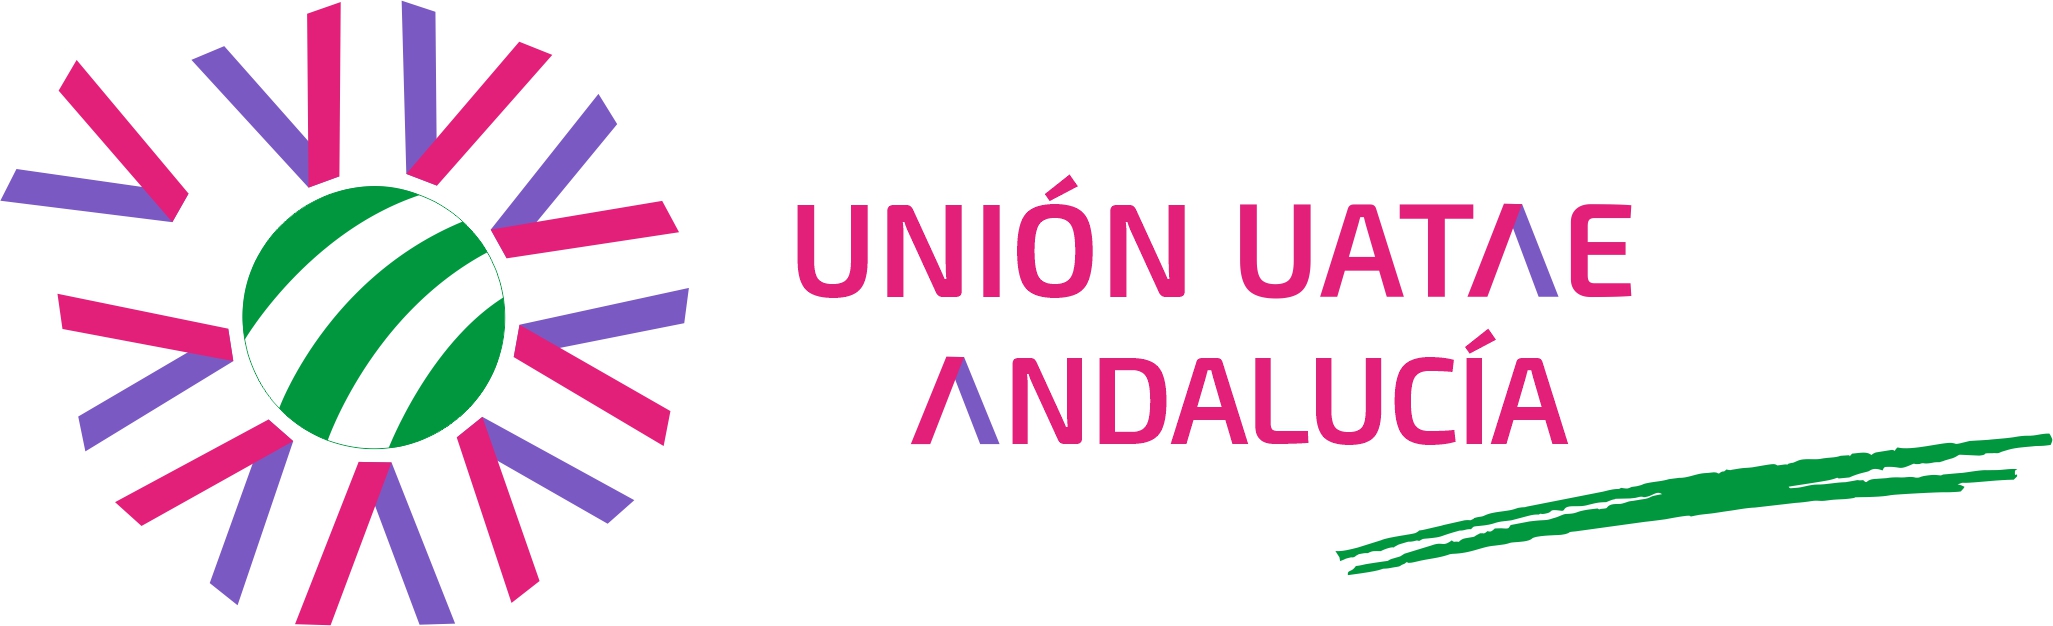 UNION DE ASOCIACIONES DE TRABAJADORES AUTÓNOMOS Y EMPRENDEDORES DE ANDALUCIA (UATAE ANDALUCÍA)